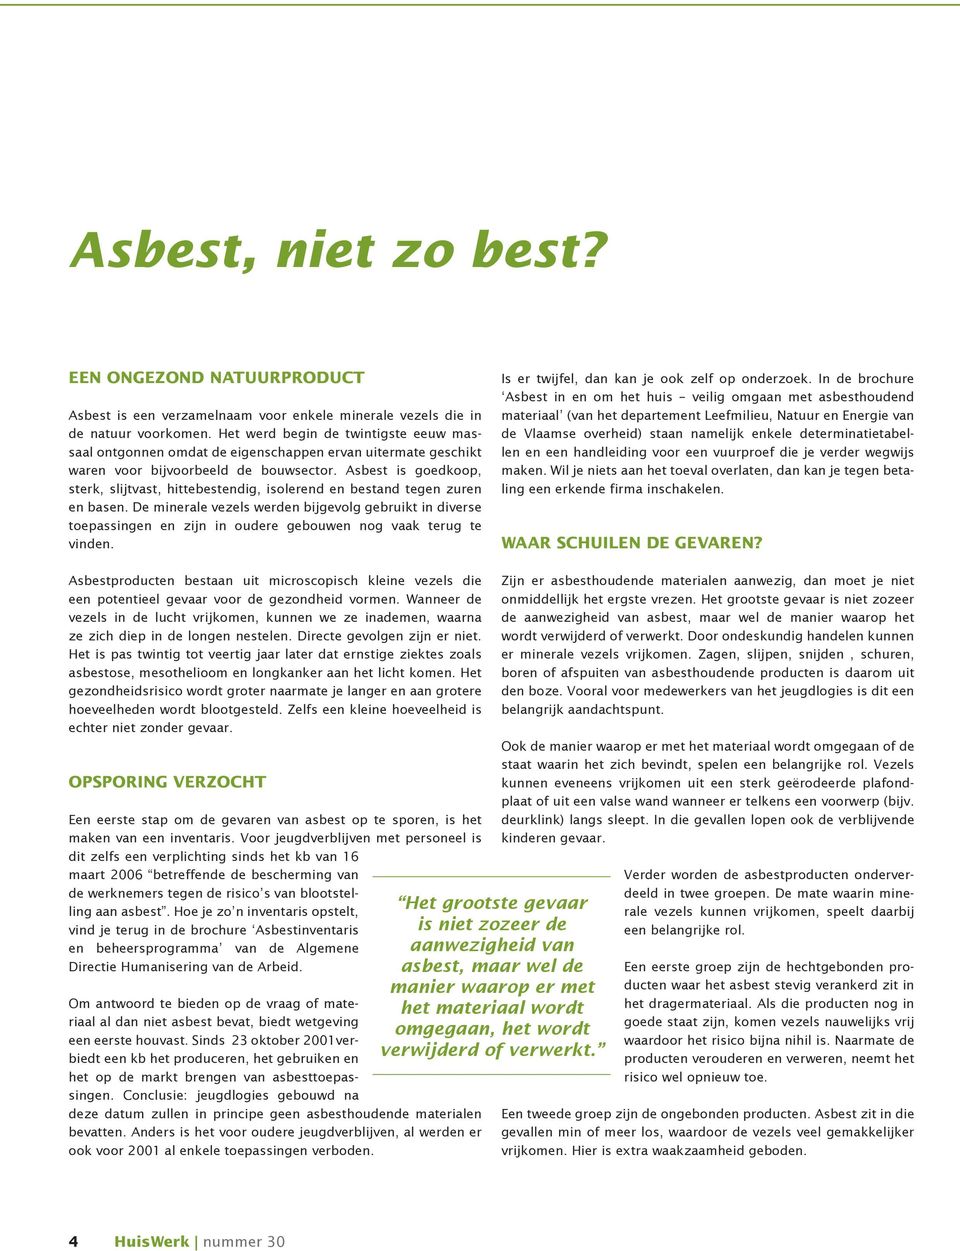 Asbest is goedkoop, sterk, slijtvast, hittebestendig, isolerend en bestand tegen zuren en basen.